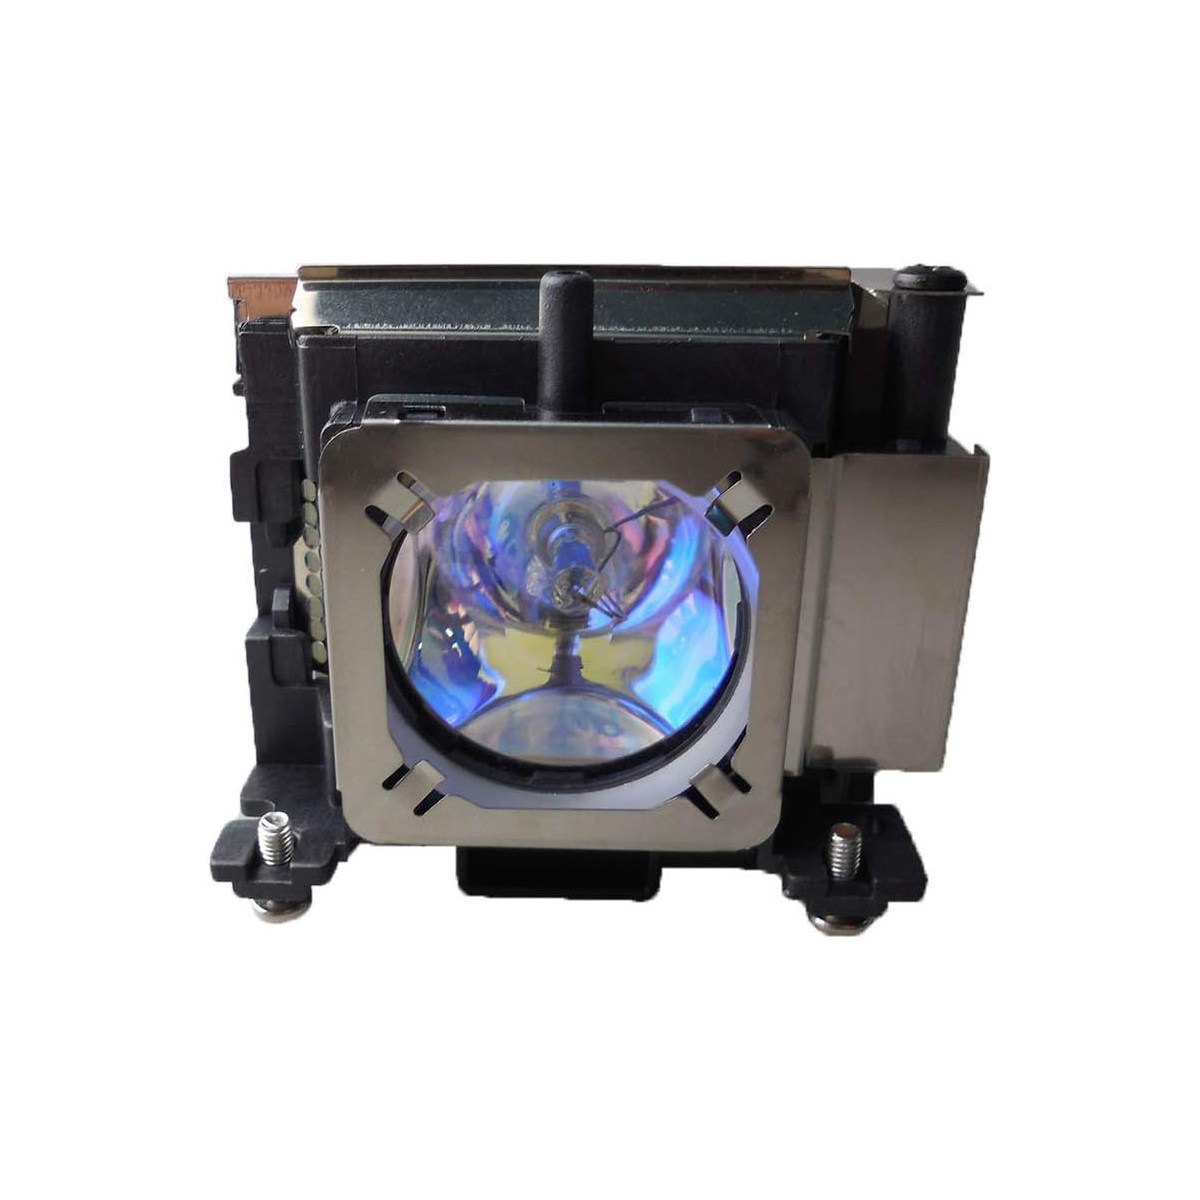 Replacement Projector lamp POA-LMP132 For Sanyo PL C-XR201 PL C-XR251 PL C-XR301